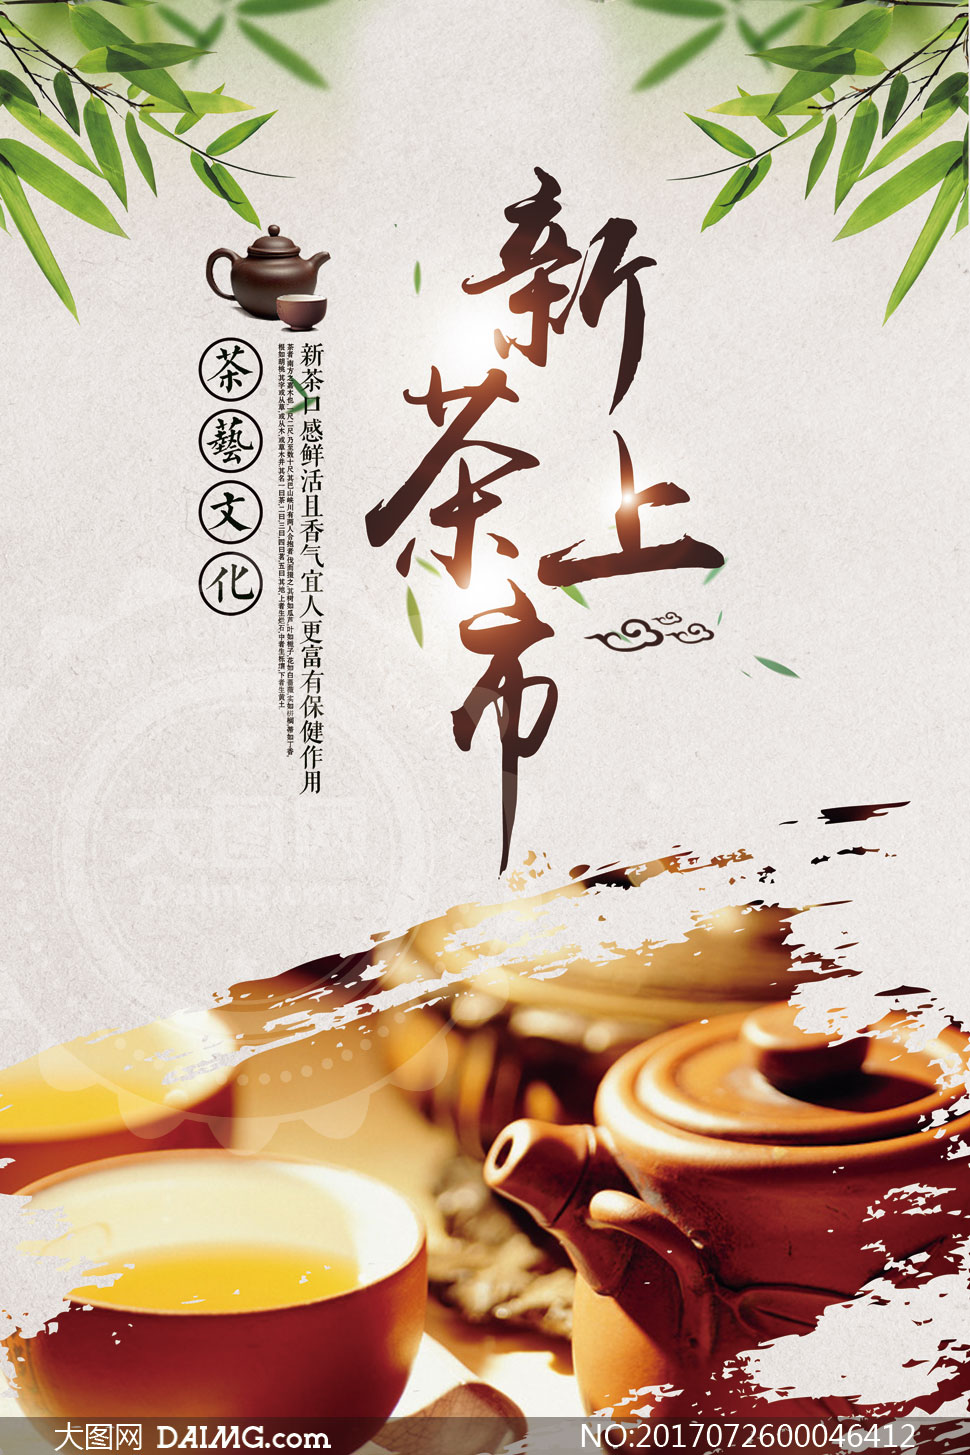 新茶上市宣传海报设计psd分层素材